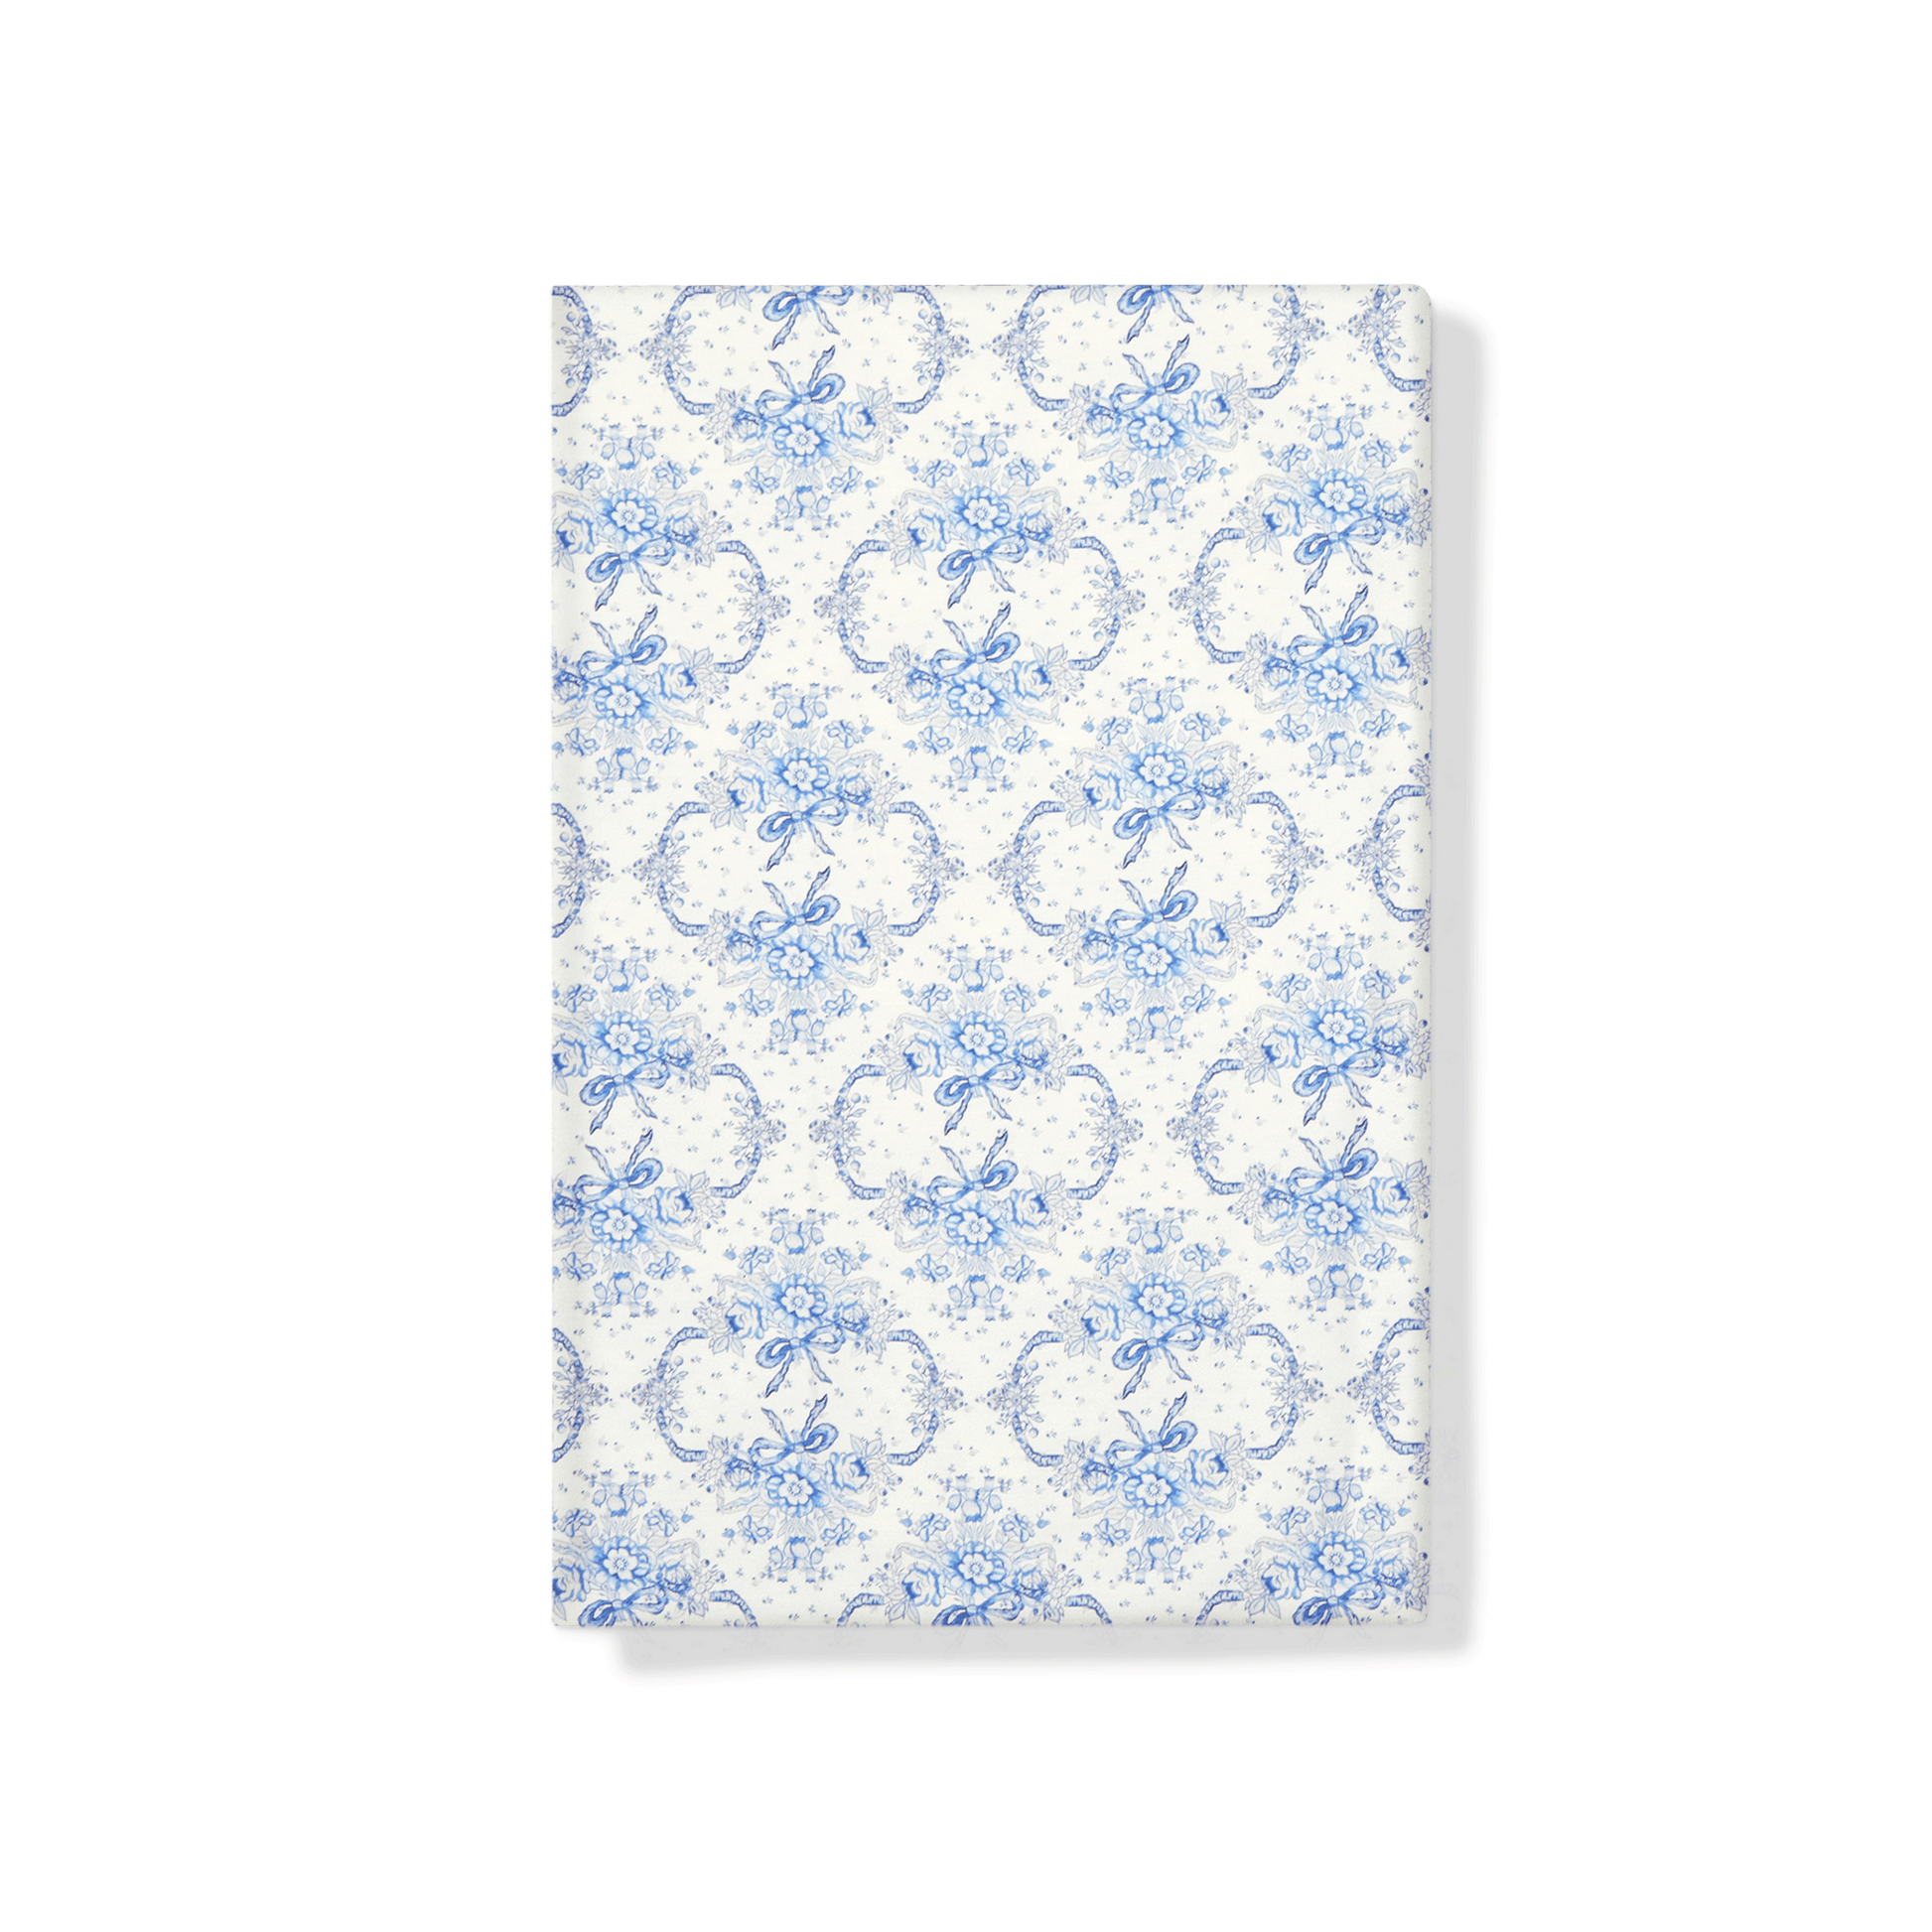 Rectangular Tablecloth Sarah Flint x Maman Blue And White Cotton